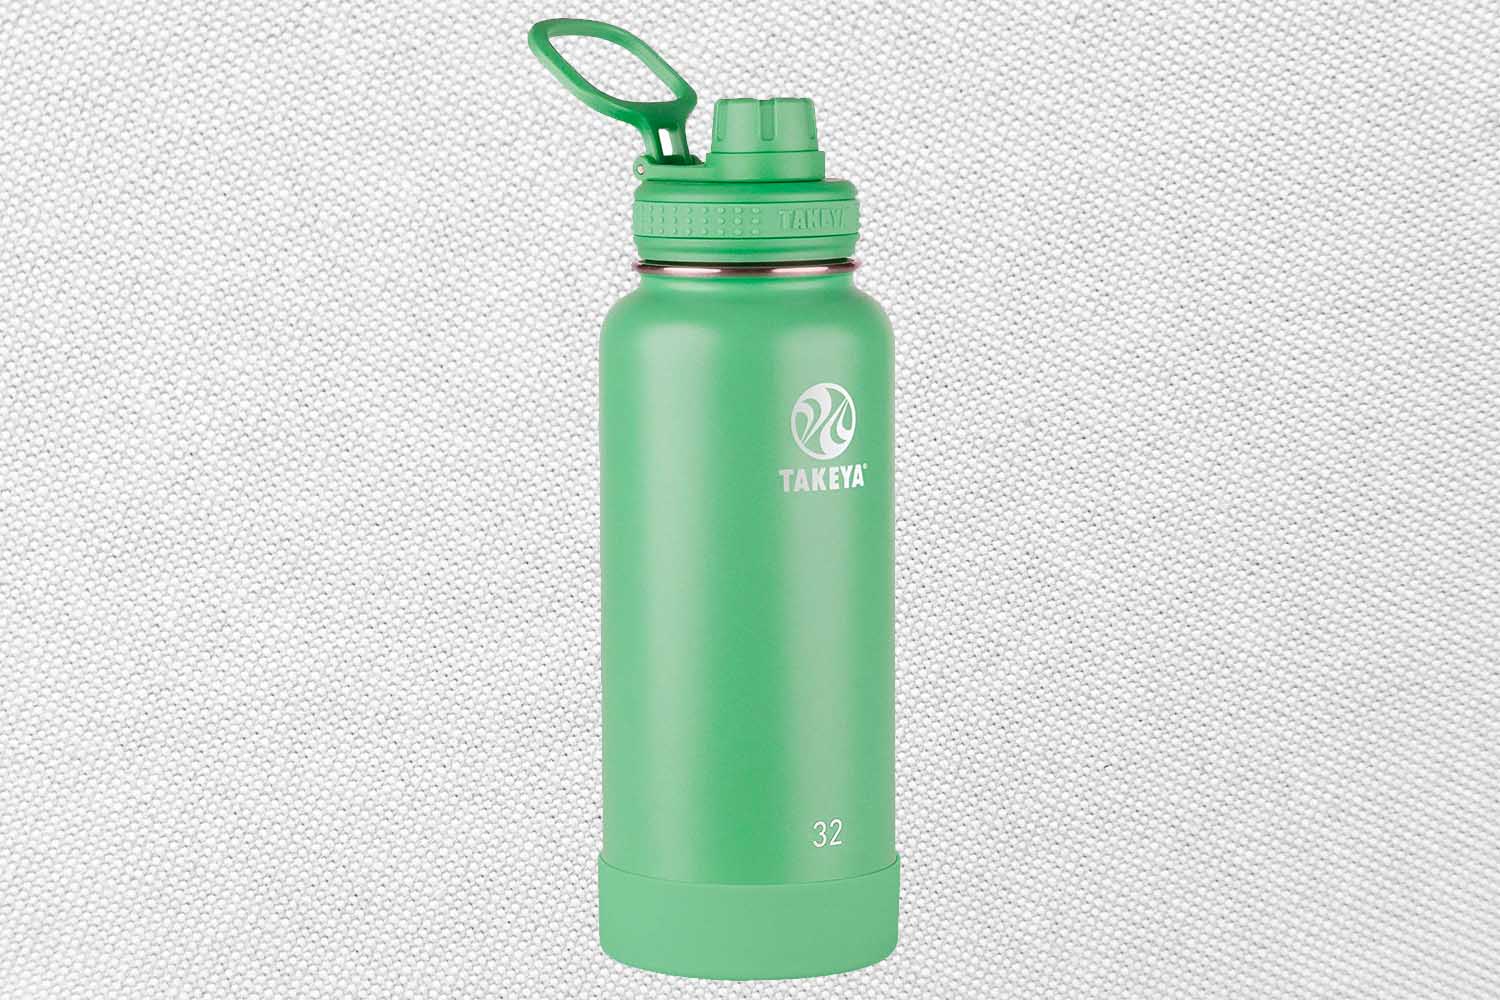 Takeya Actives water bottle